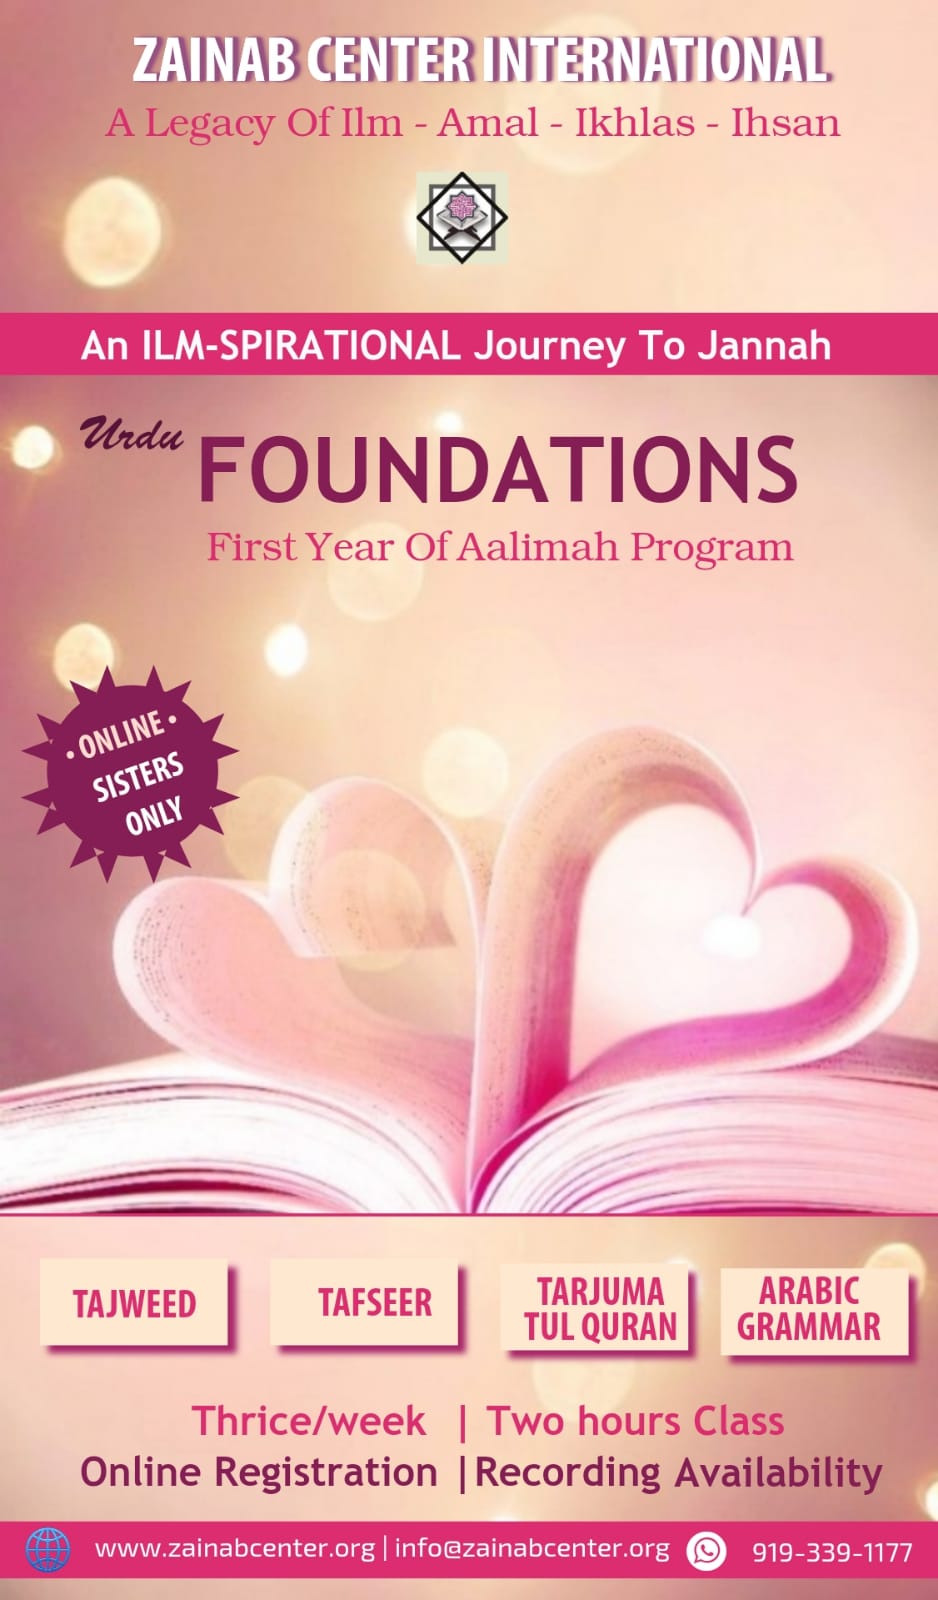 Urdu : Foundations